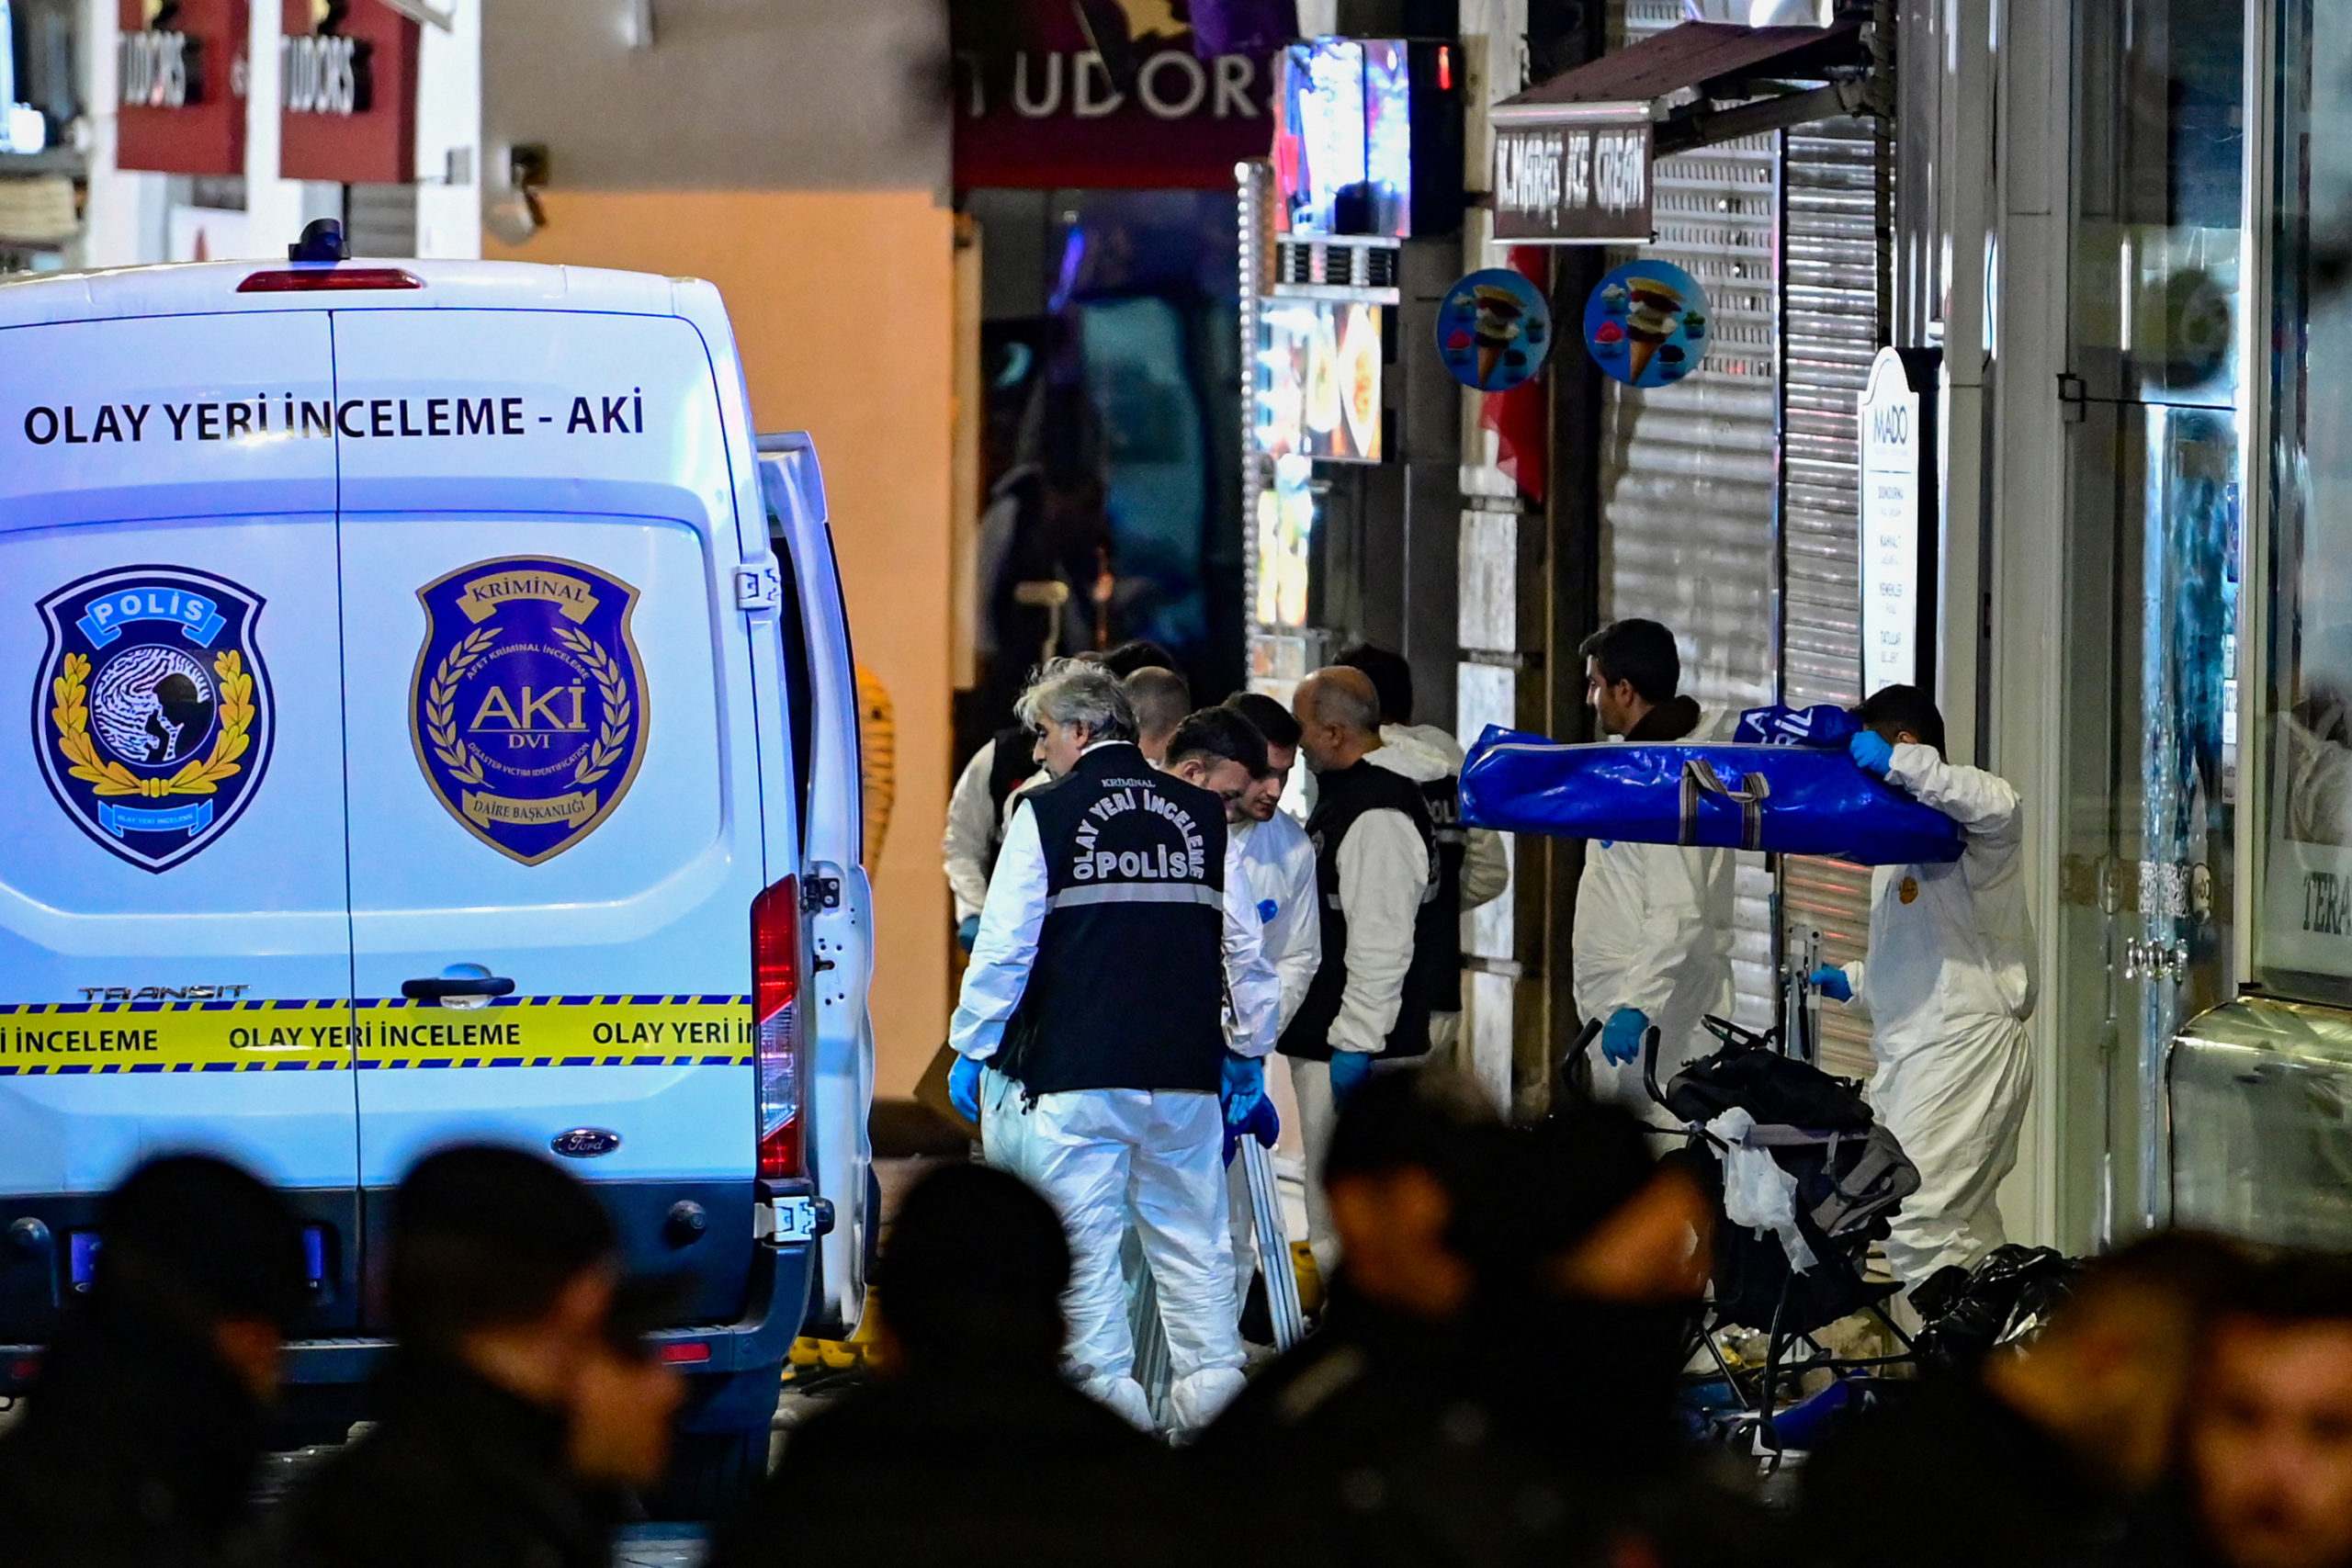 Με «άρωμα» τρομοκρατίας η έκρηξη στην Κωνσταντινούπολη – Ποια είναι η ύποπτη που ψάχνουν οι Αρχές